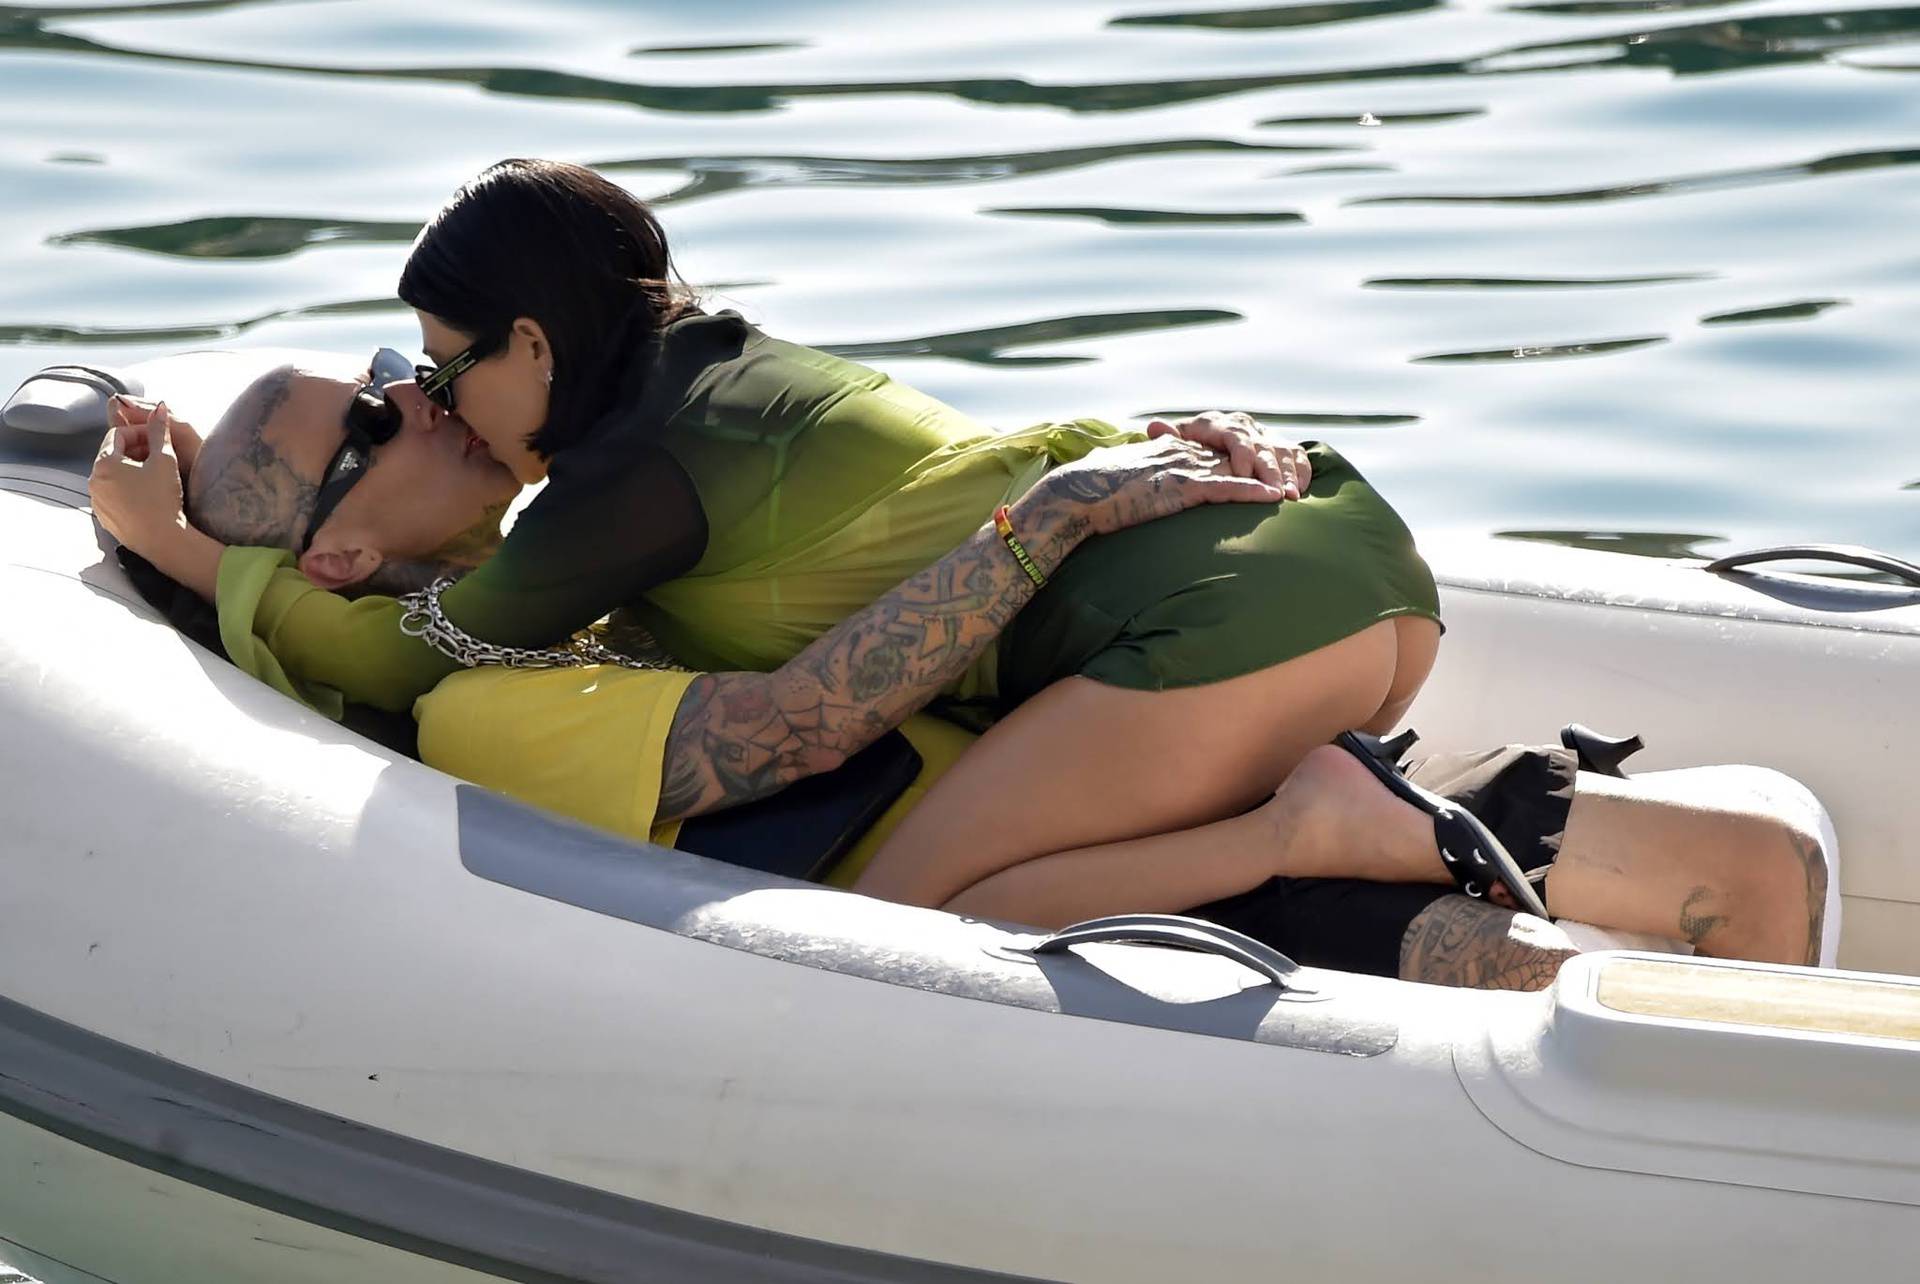 Kardashian izmjenjivala strasti s novim dečkom, bivši partneri komentirali su njene vruće fotke